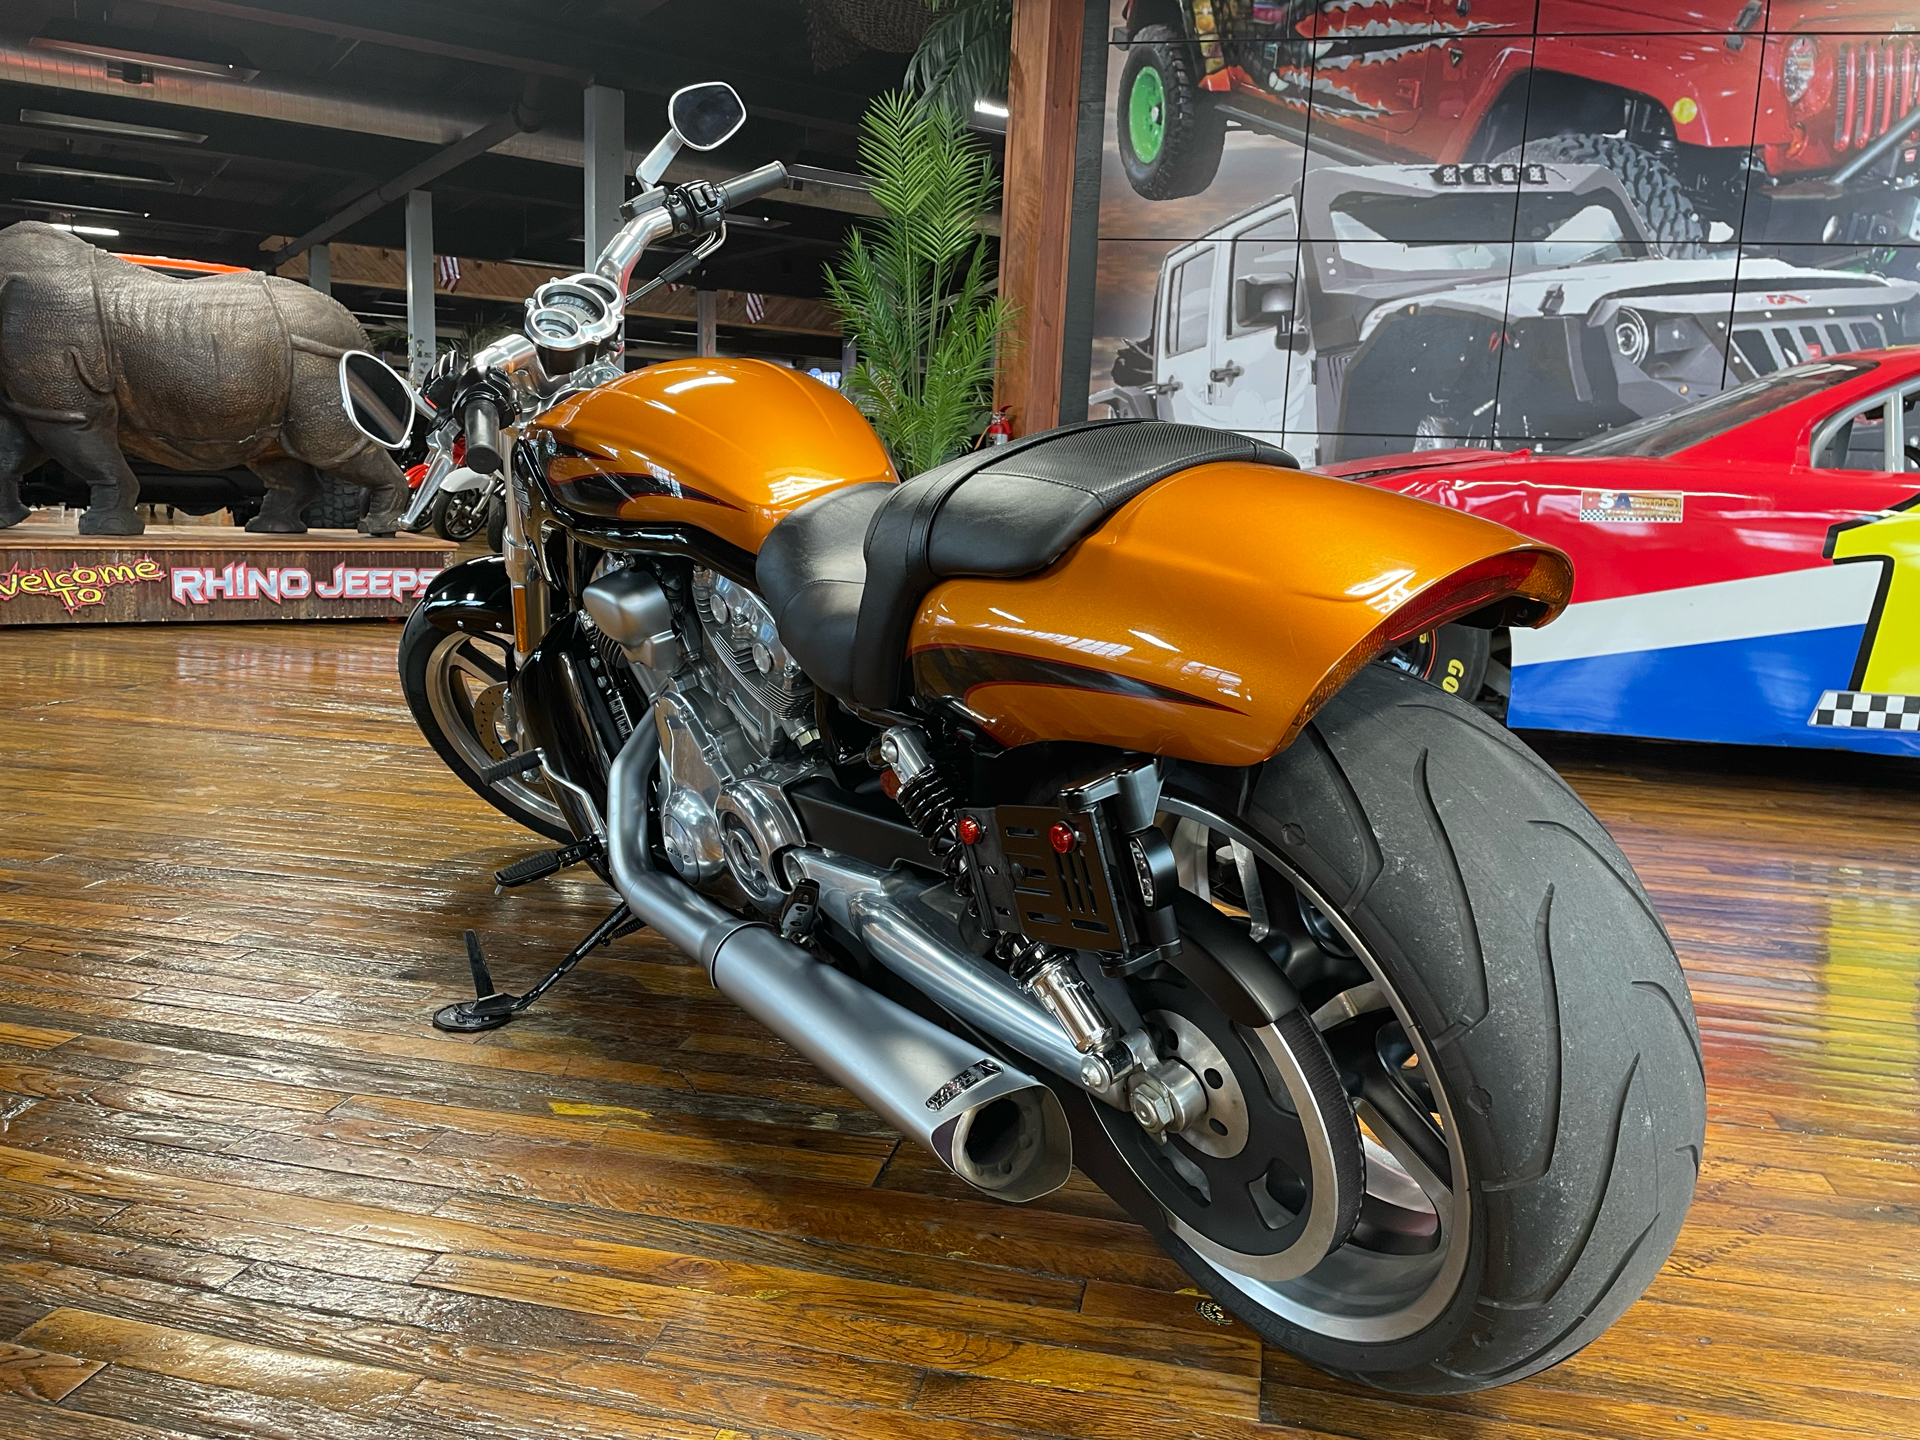 2014 Harley-Davidson V-Rod Muscle® in Laurel, Mississippi - Photo 4